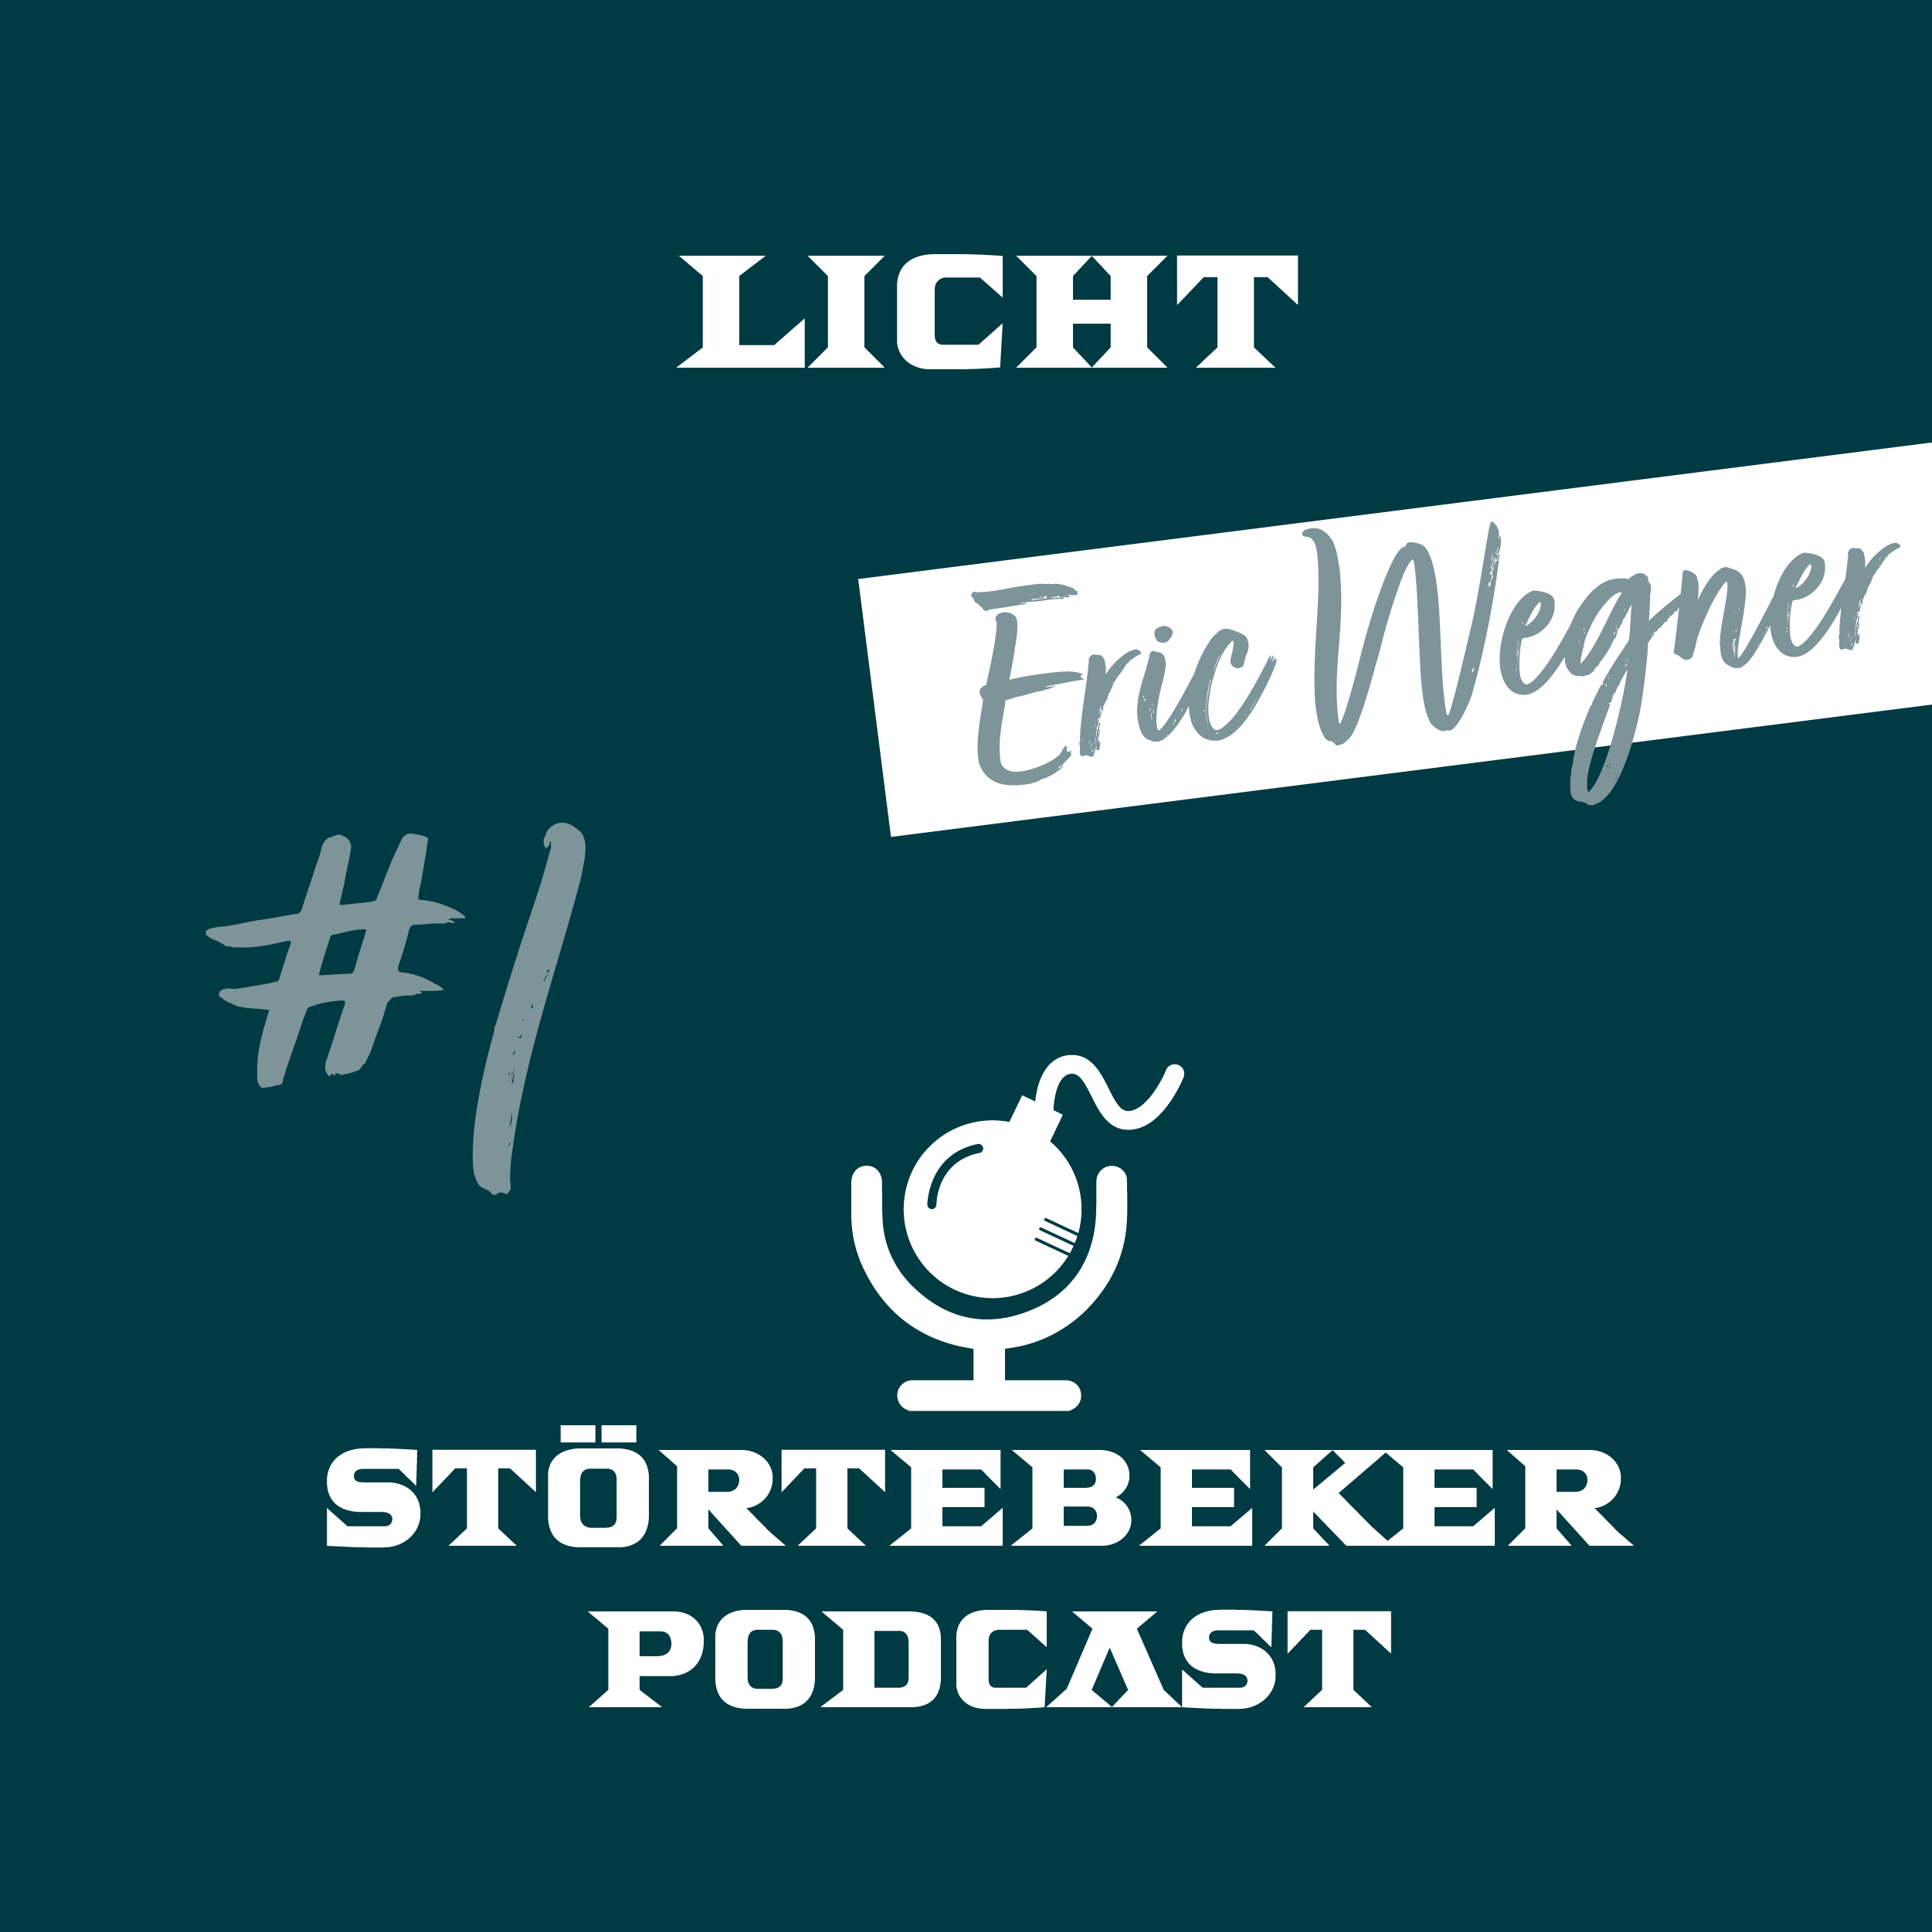 Störtebeker Podcast  #1 ⎮ Licht ⎮ Eric Wegner